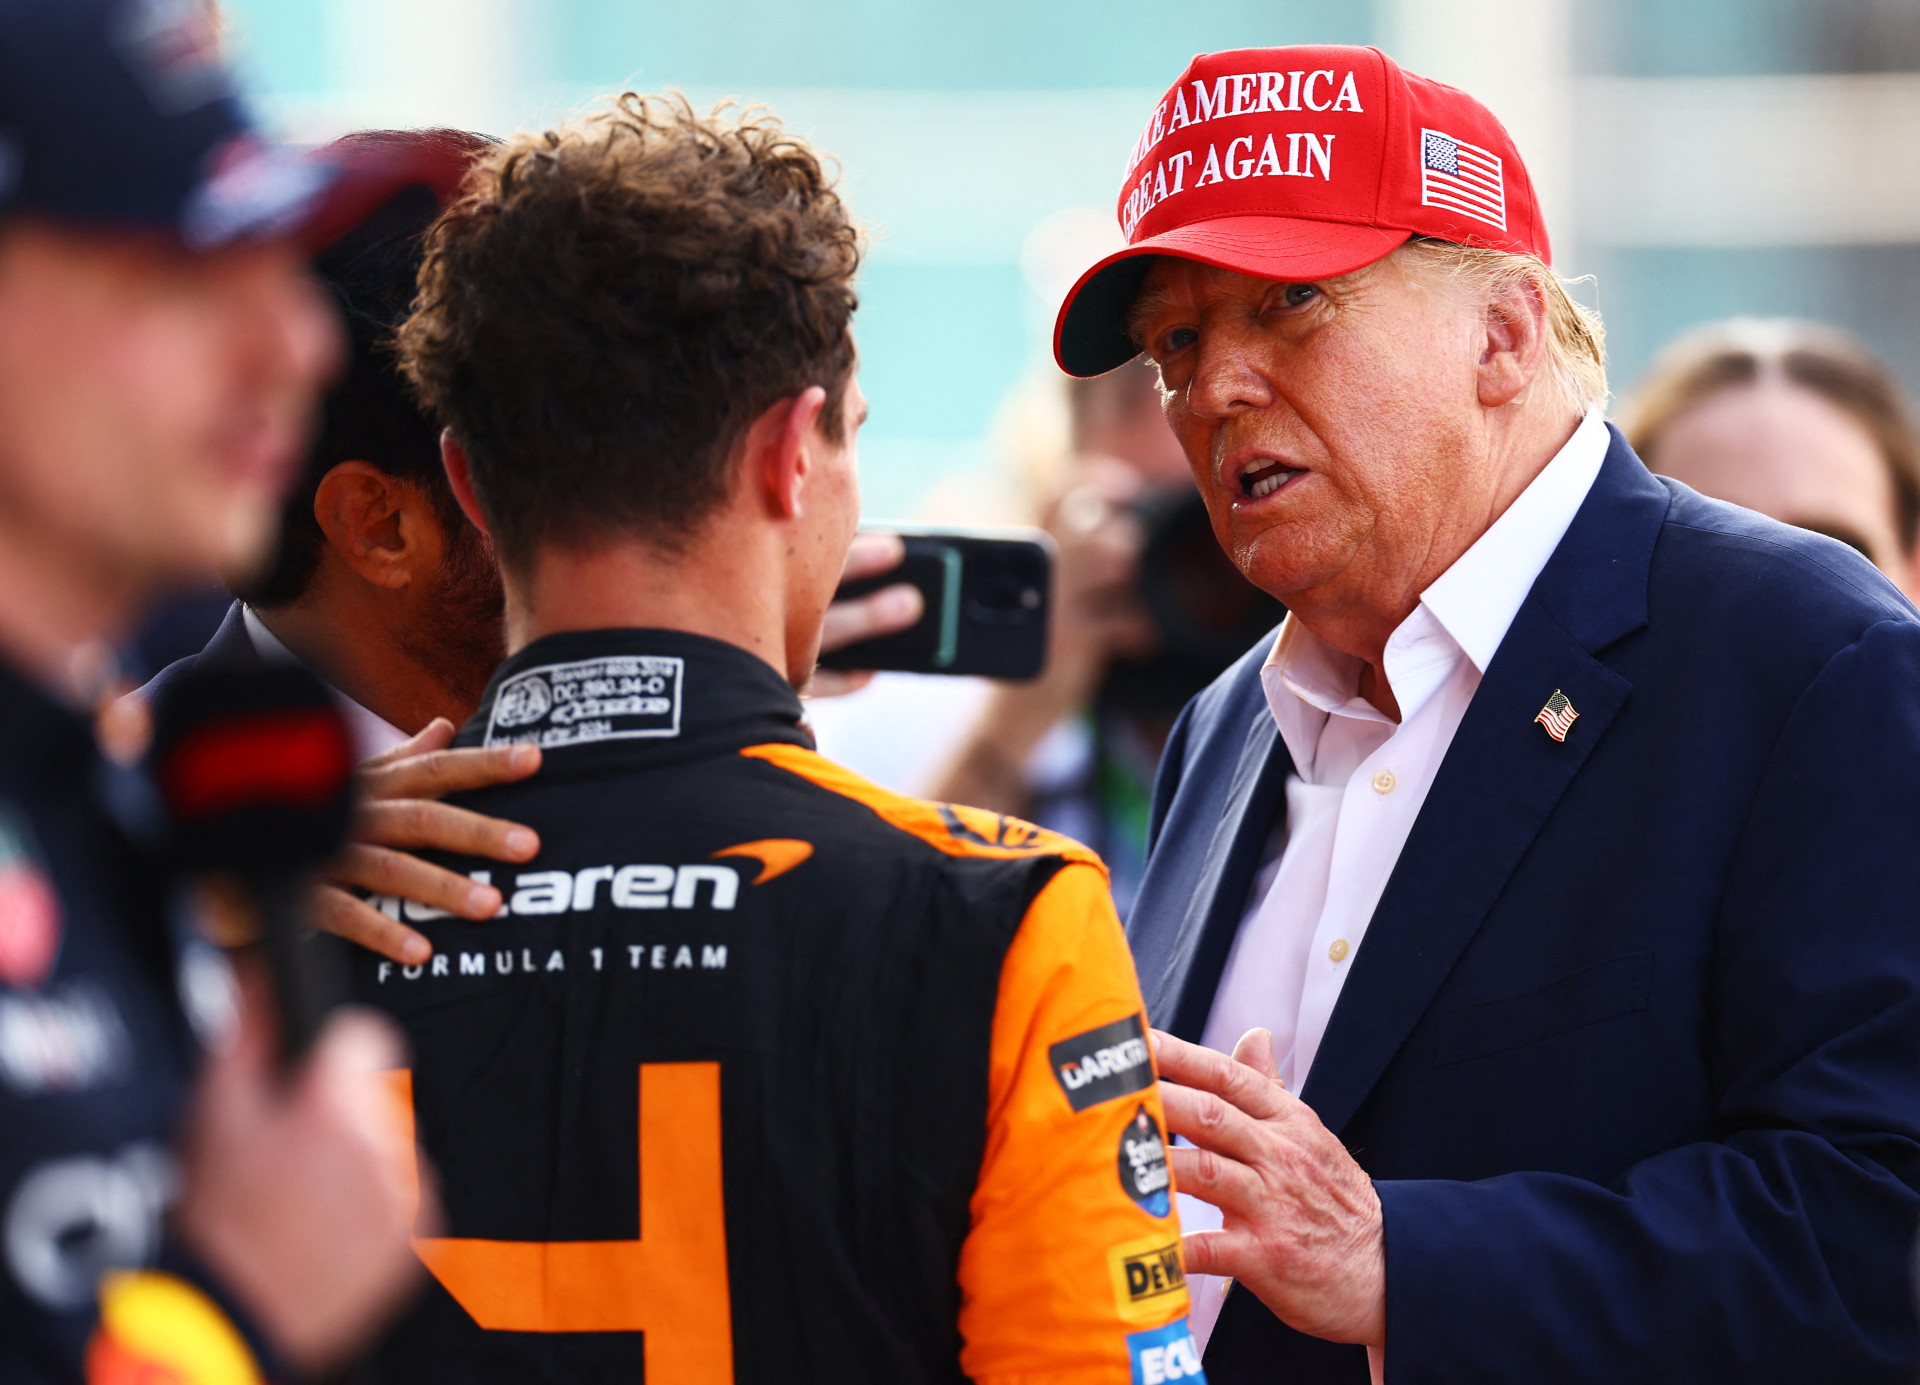 Lando Norris, piloto da McLaren, e Donald Trump, ex-presidente dos EUA, no GP de Miami de Fórmula 1 (Foto: Mark Thompson / GETTY IMAGES NORTH AMERICA / Getty Images via AFP)